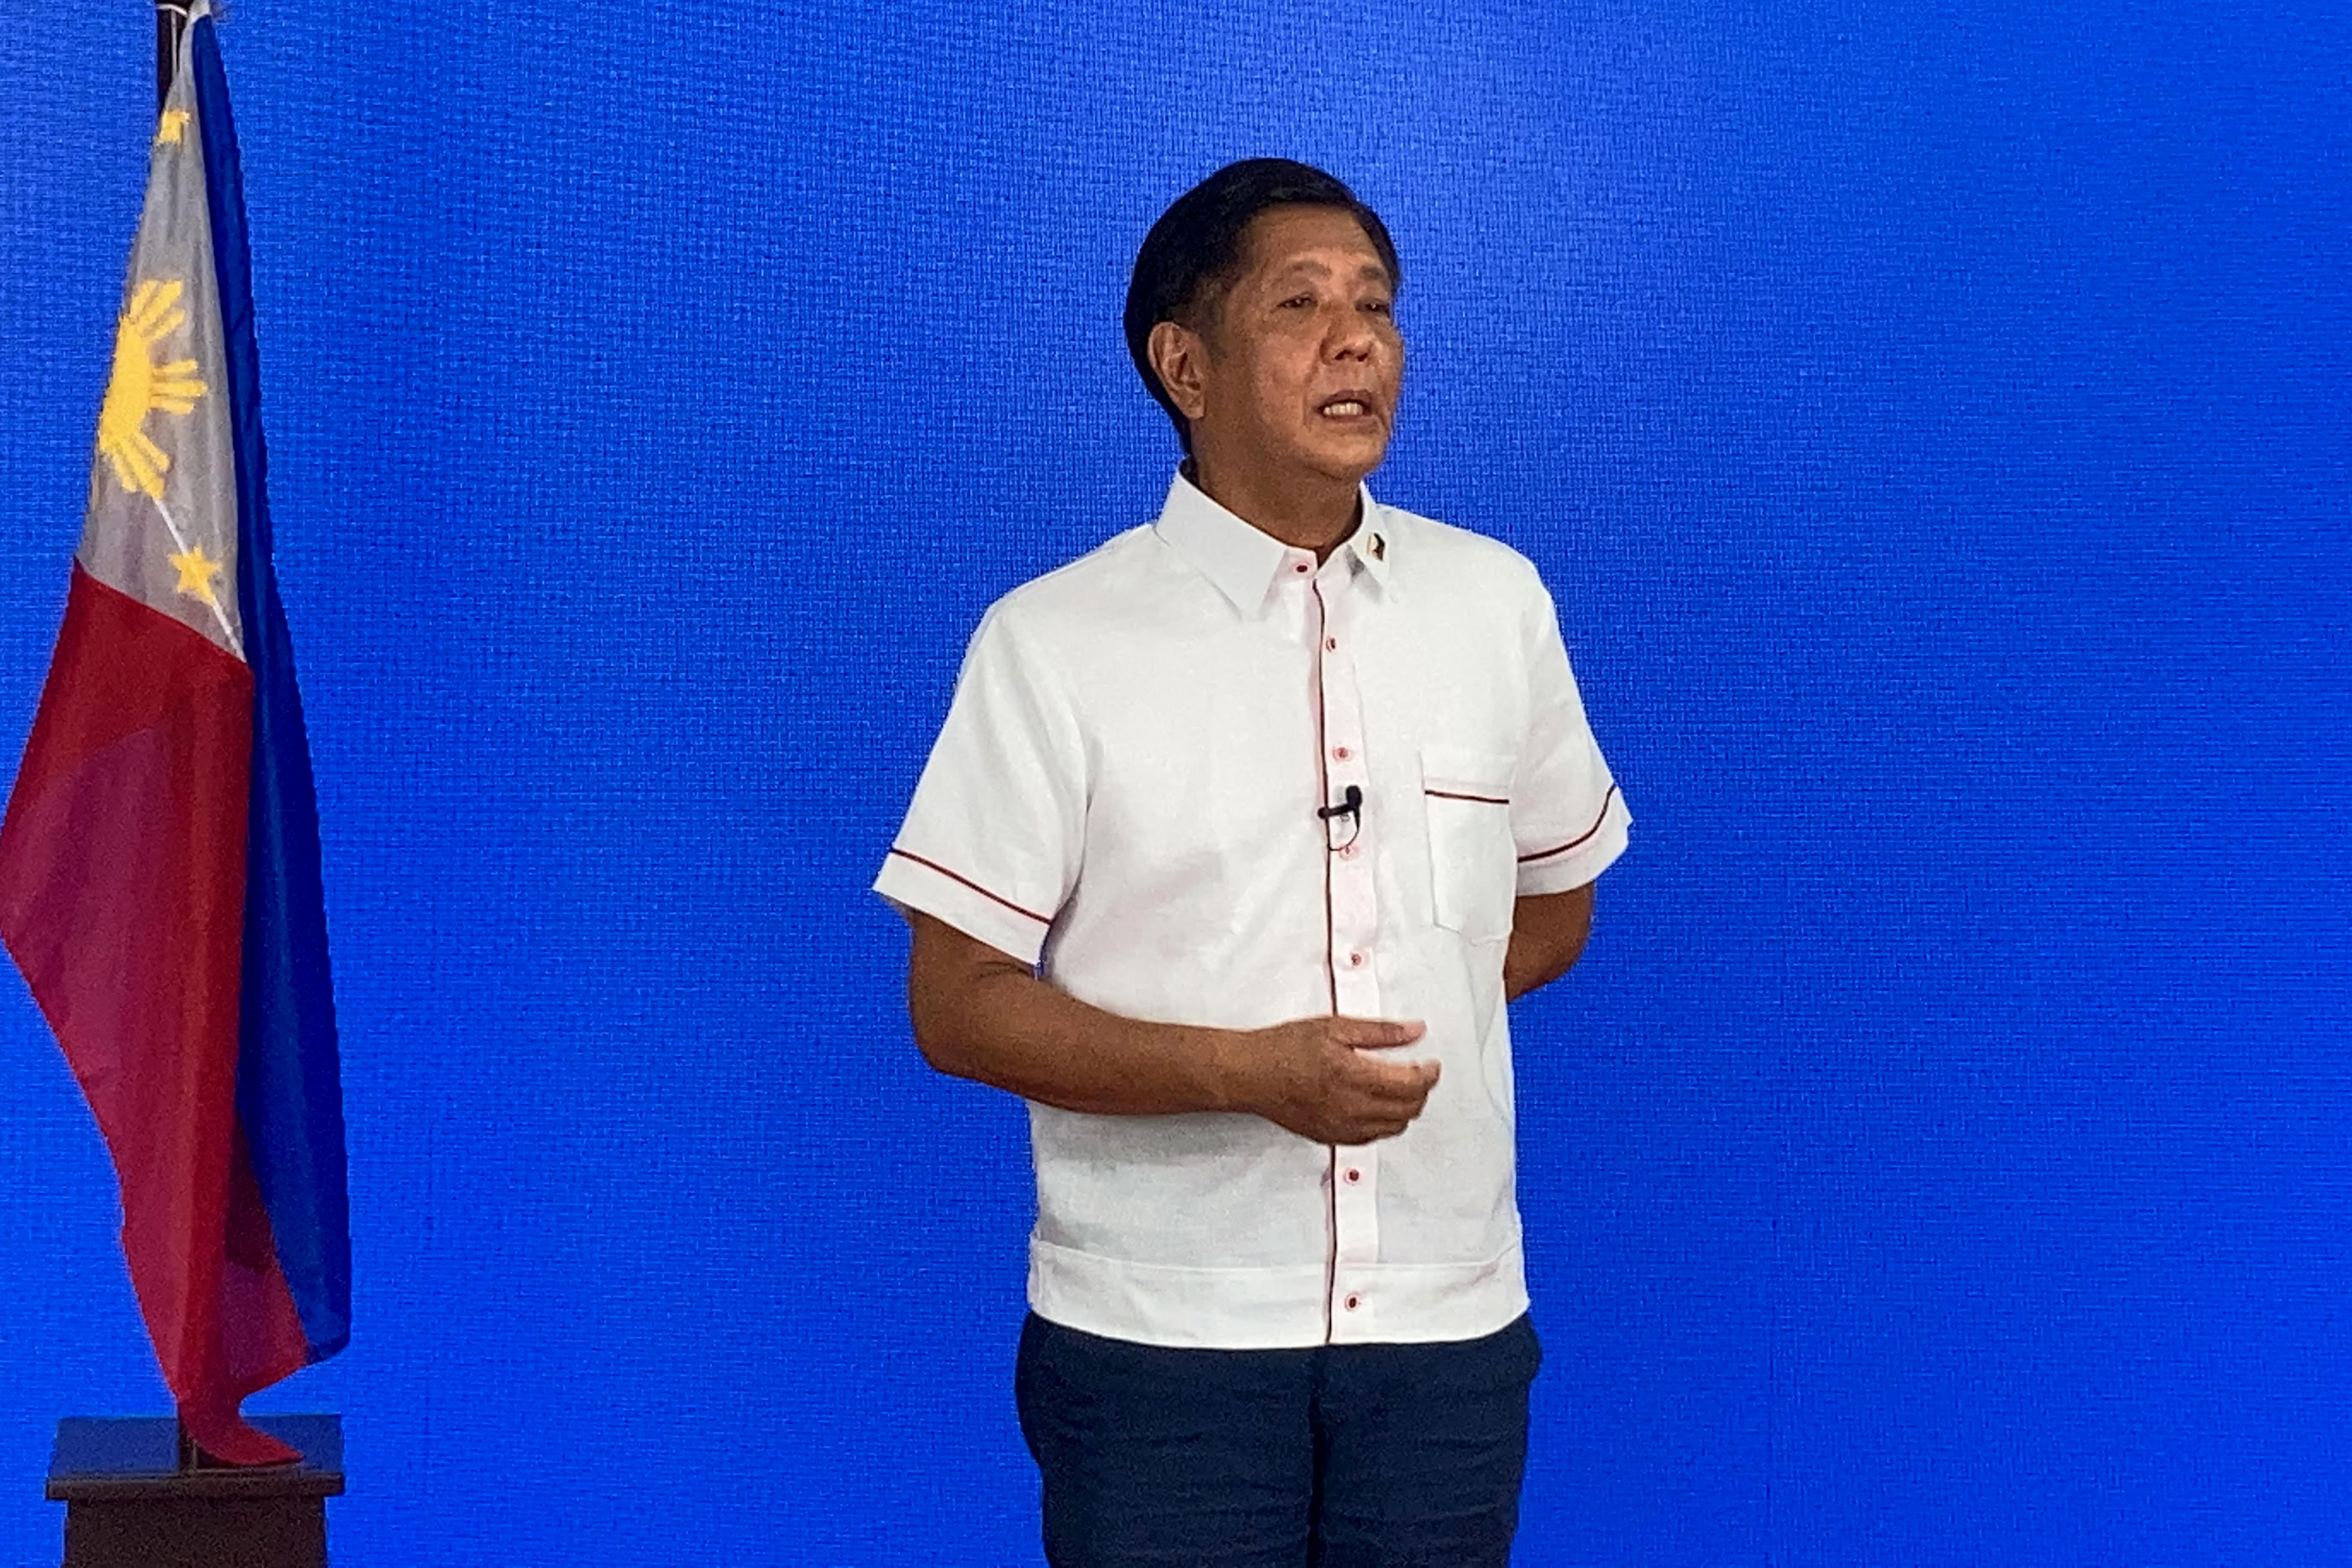 Bongbong Marcos, a rettegett Marcos diktátor fia óriási fölénnyel vezet a Fülöp-szigeteki elnökválasztáson